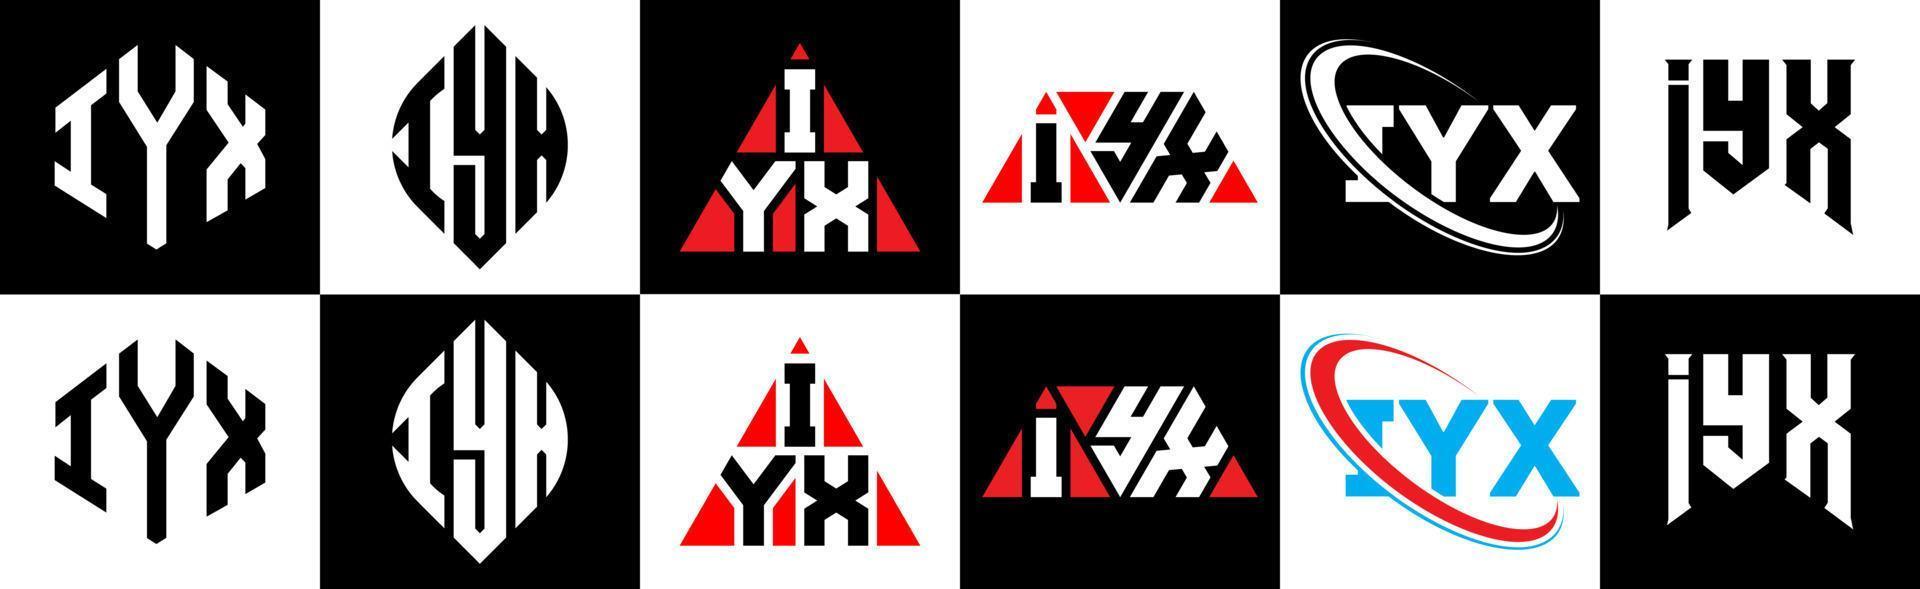 iix lettera logo design nel sei stile. iix poligono, cerchio, triangolo, esagono, piatto e semplice stile con nero e bianca colore variazione lettera logo impostato nel uno tavola da disegno. iix minimalista e classico logo vettore